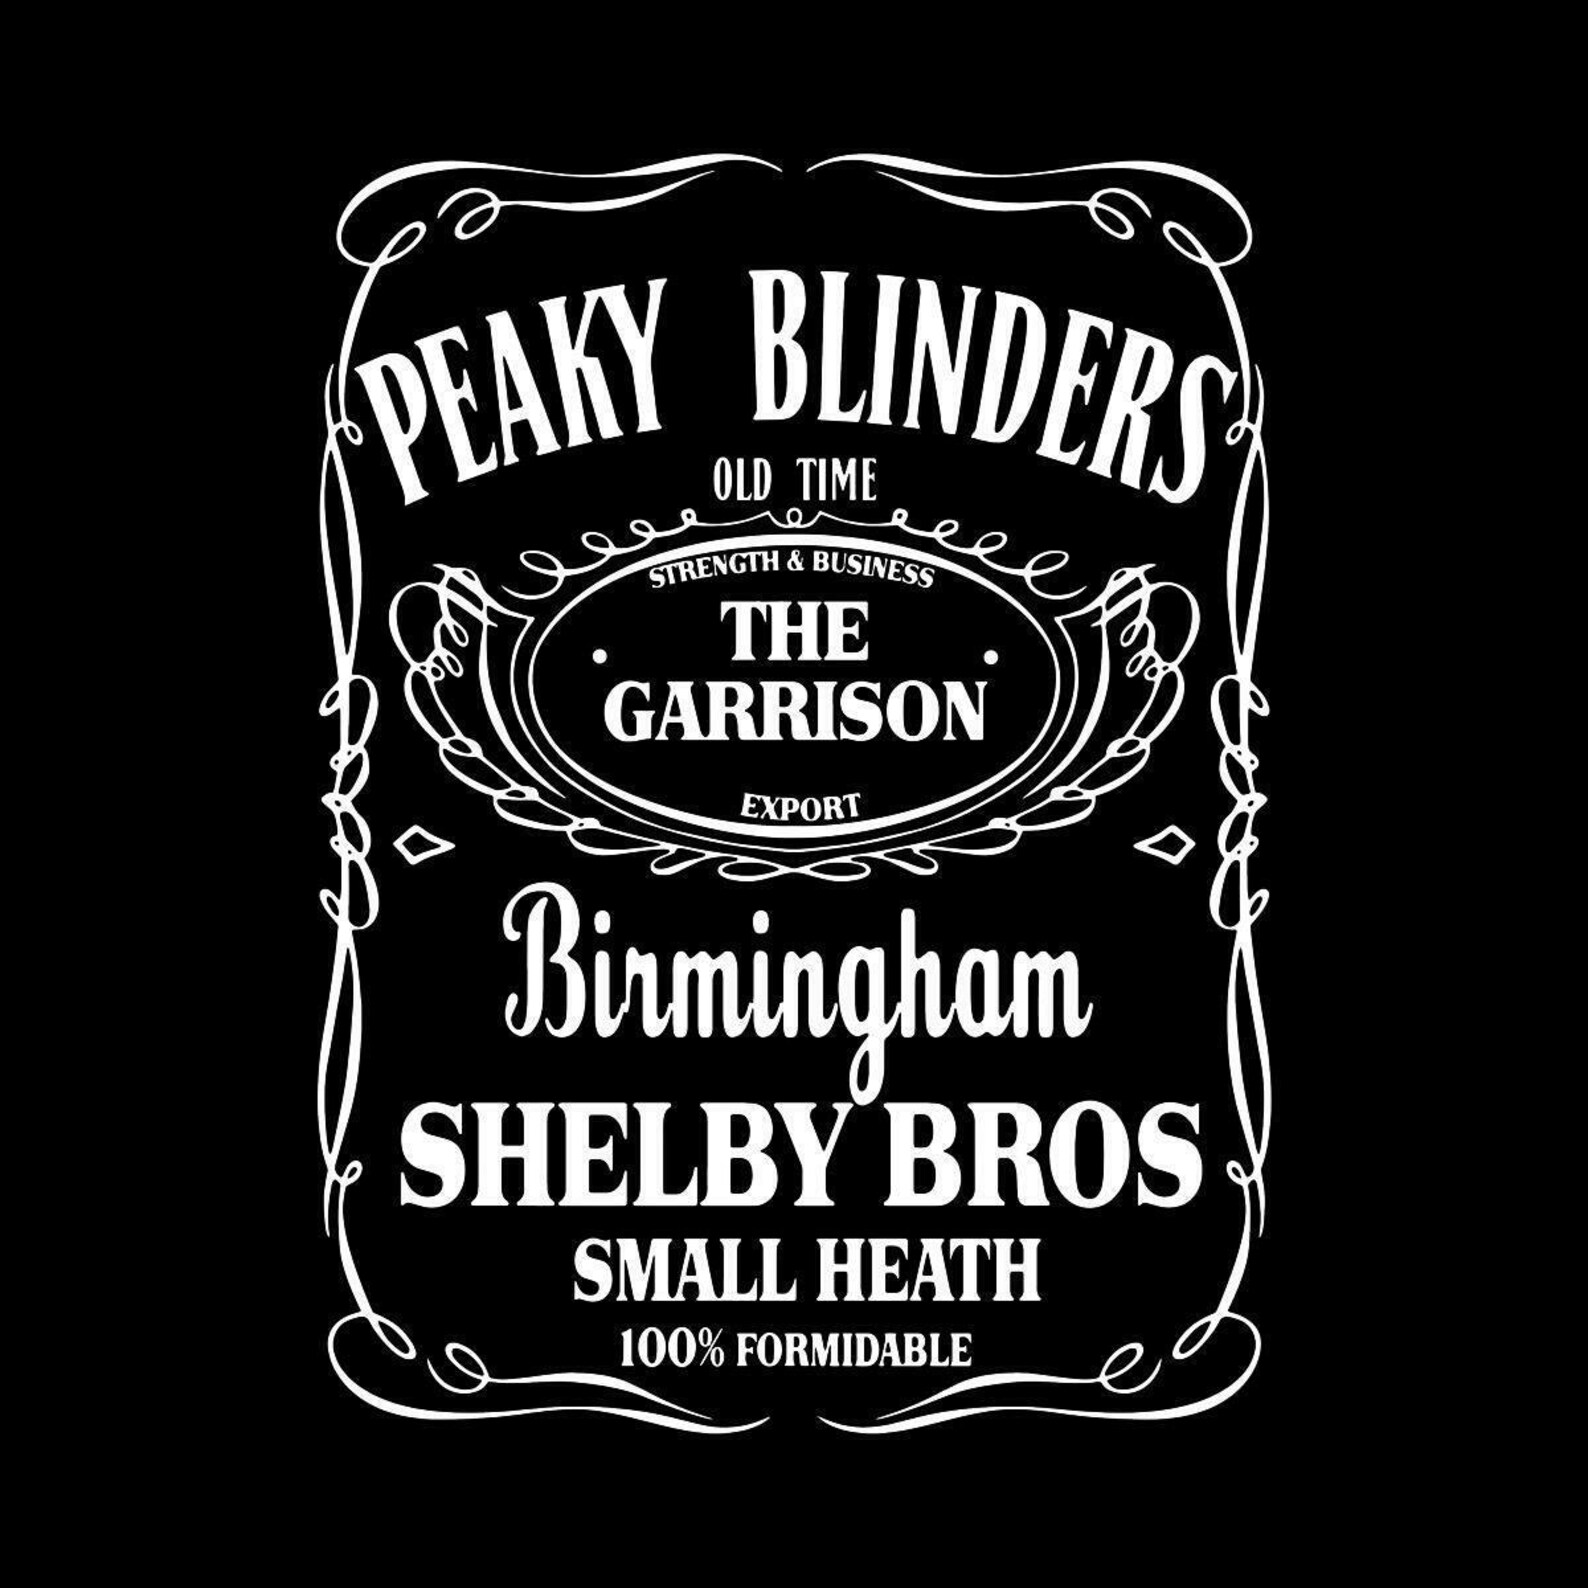 peaky-blinders-the-garrison-film-movie-cinema-metal-tin-sign-etsy